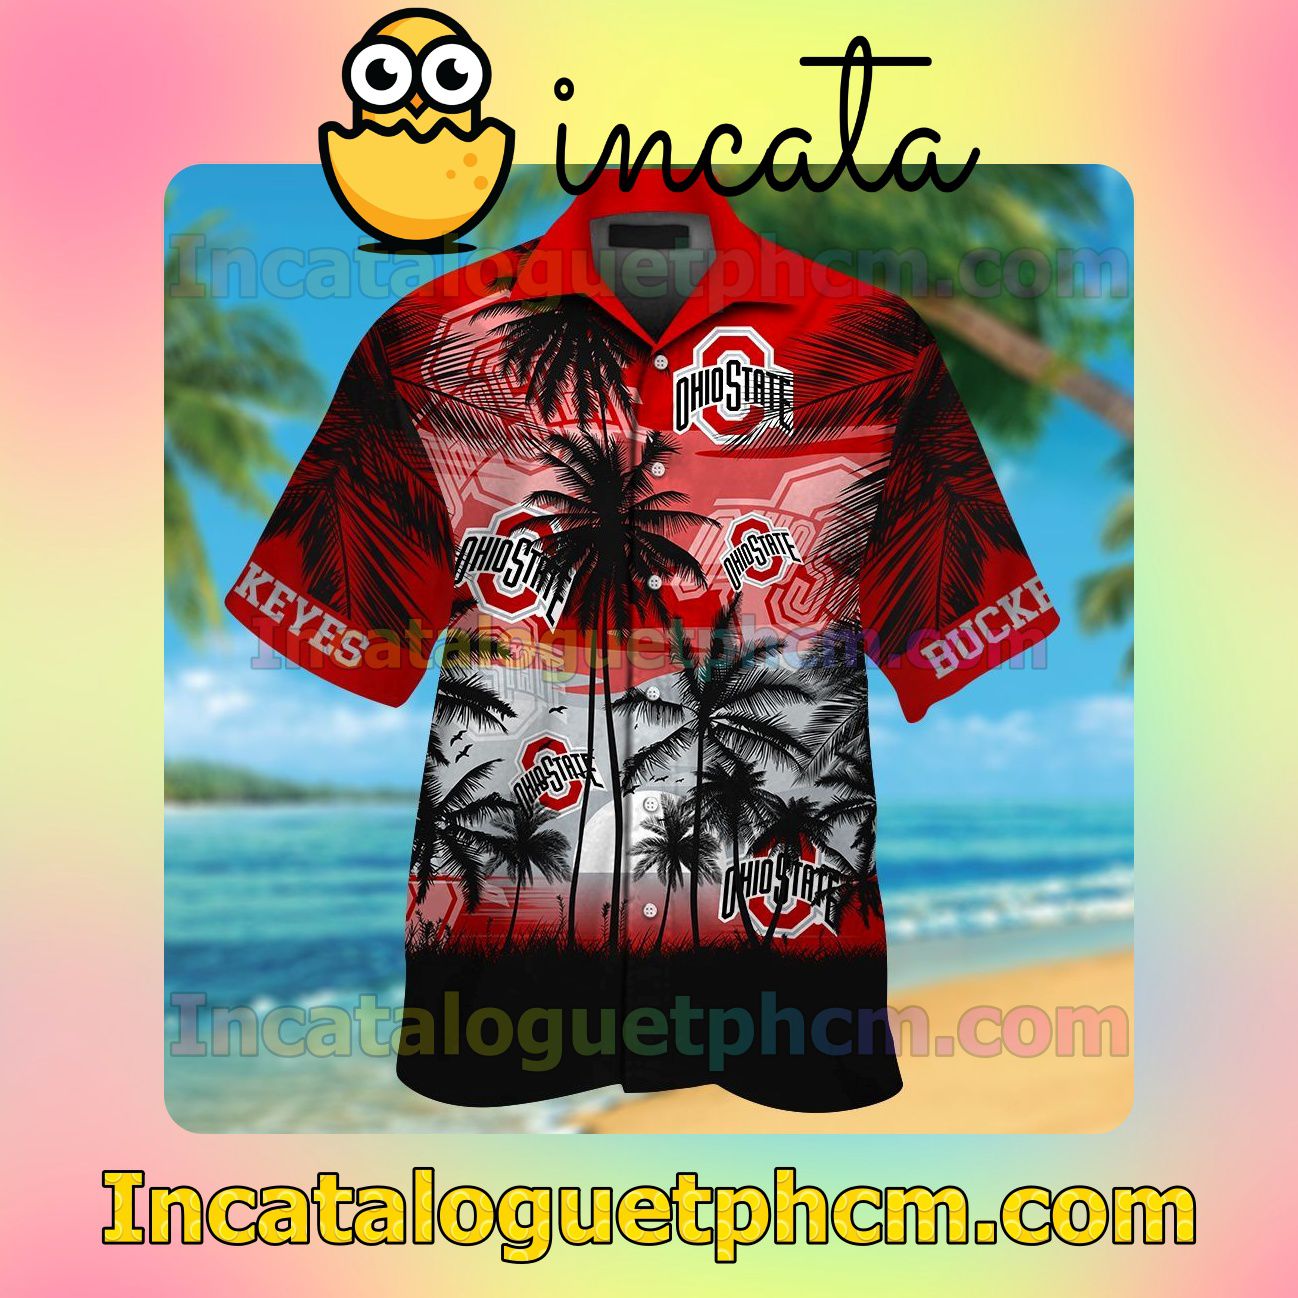 Ohio State Buckeyes Tropical Beach Vacation Shirt, Swim Shorts